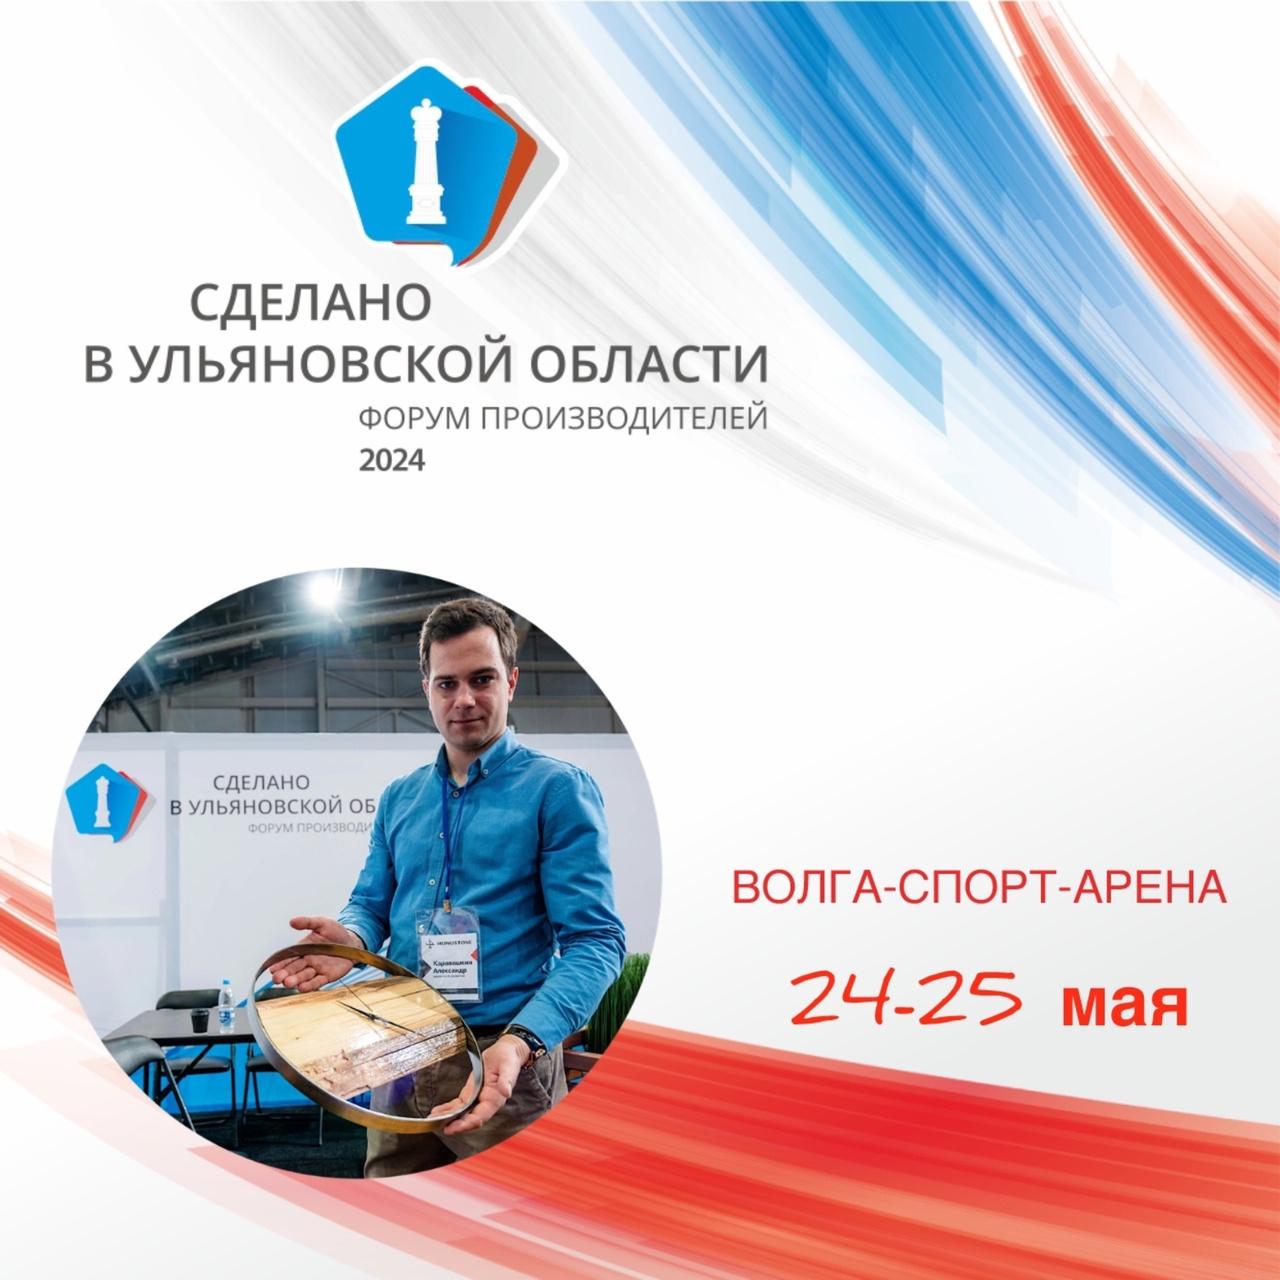 Форум-выставка «Сделано в Ульяновской области» пройдёт 24 и 25 мая в Ульяновске.